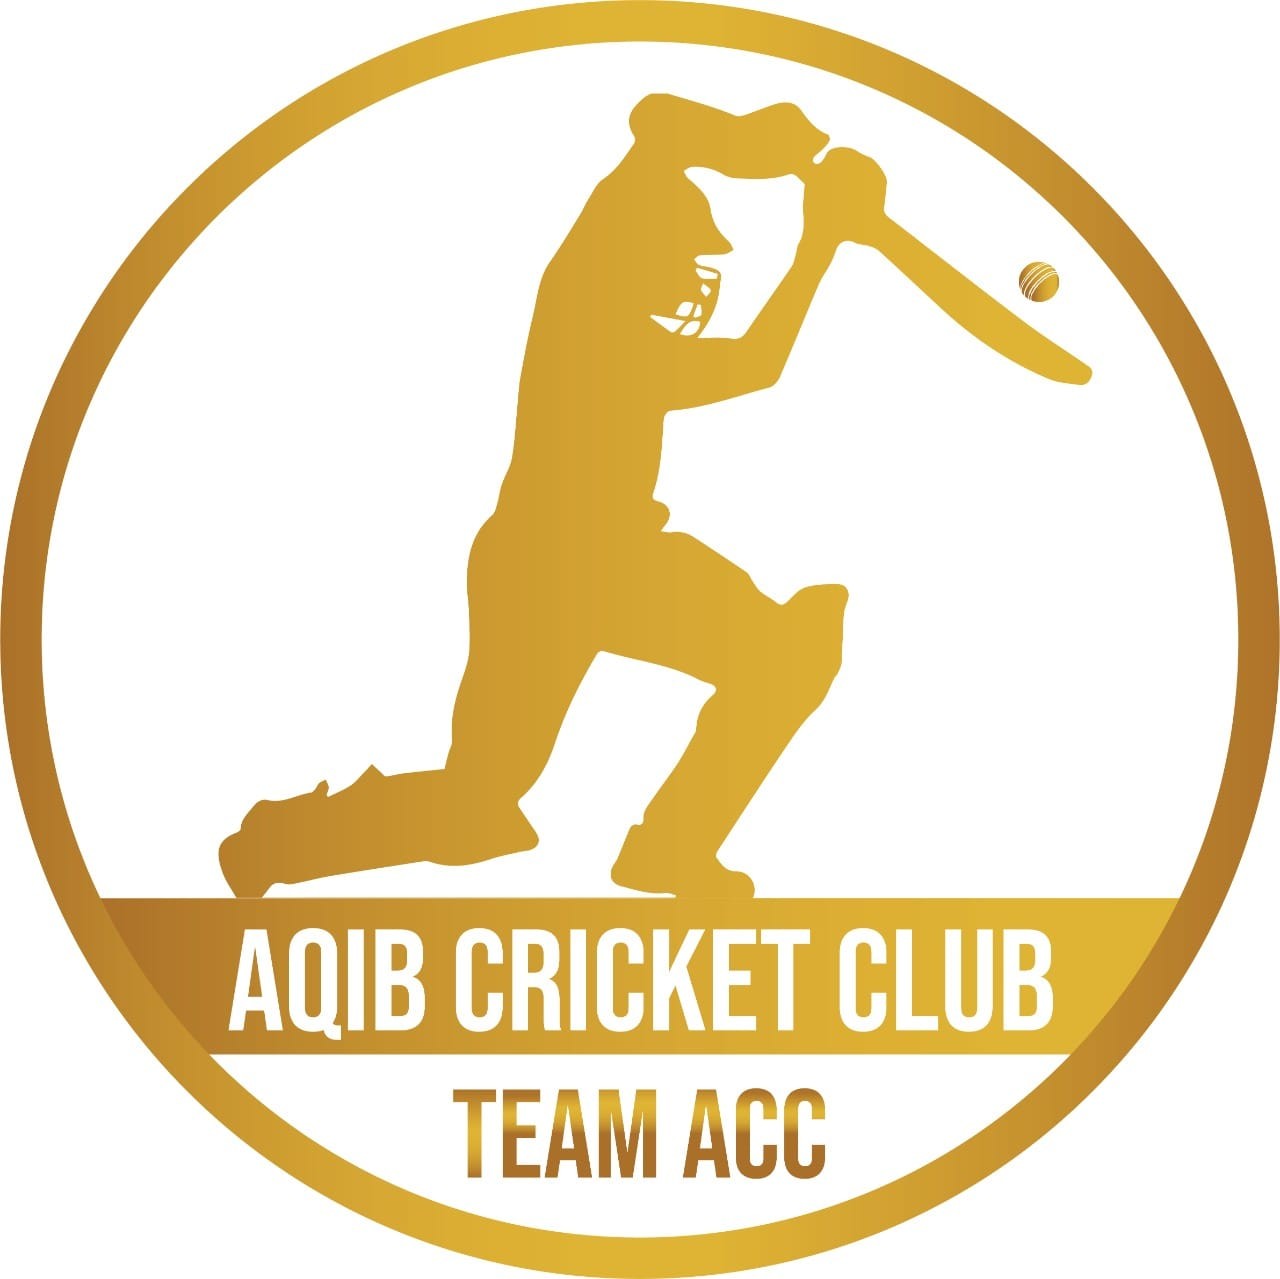 ACC Team